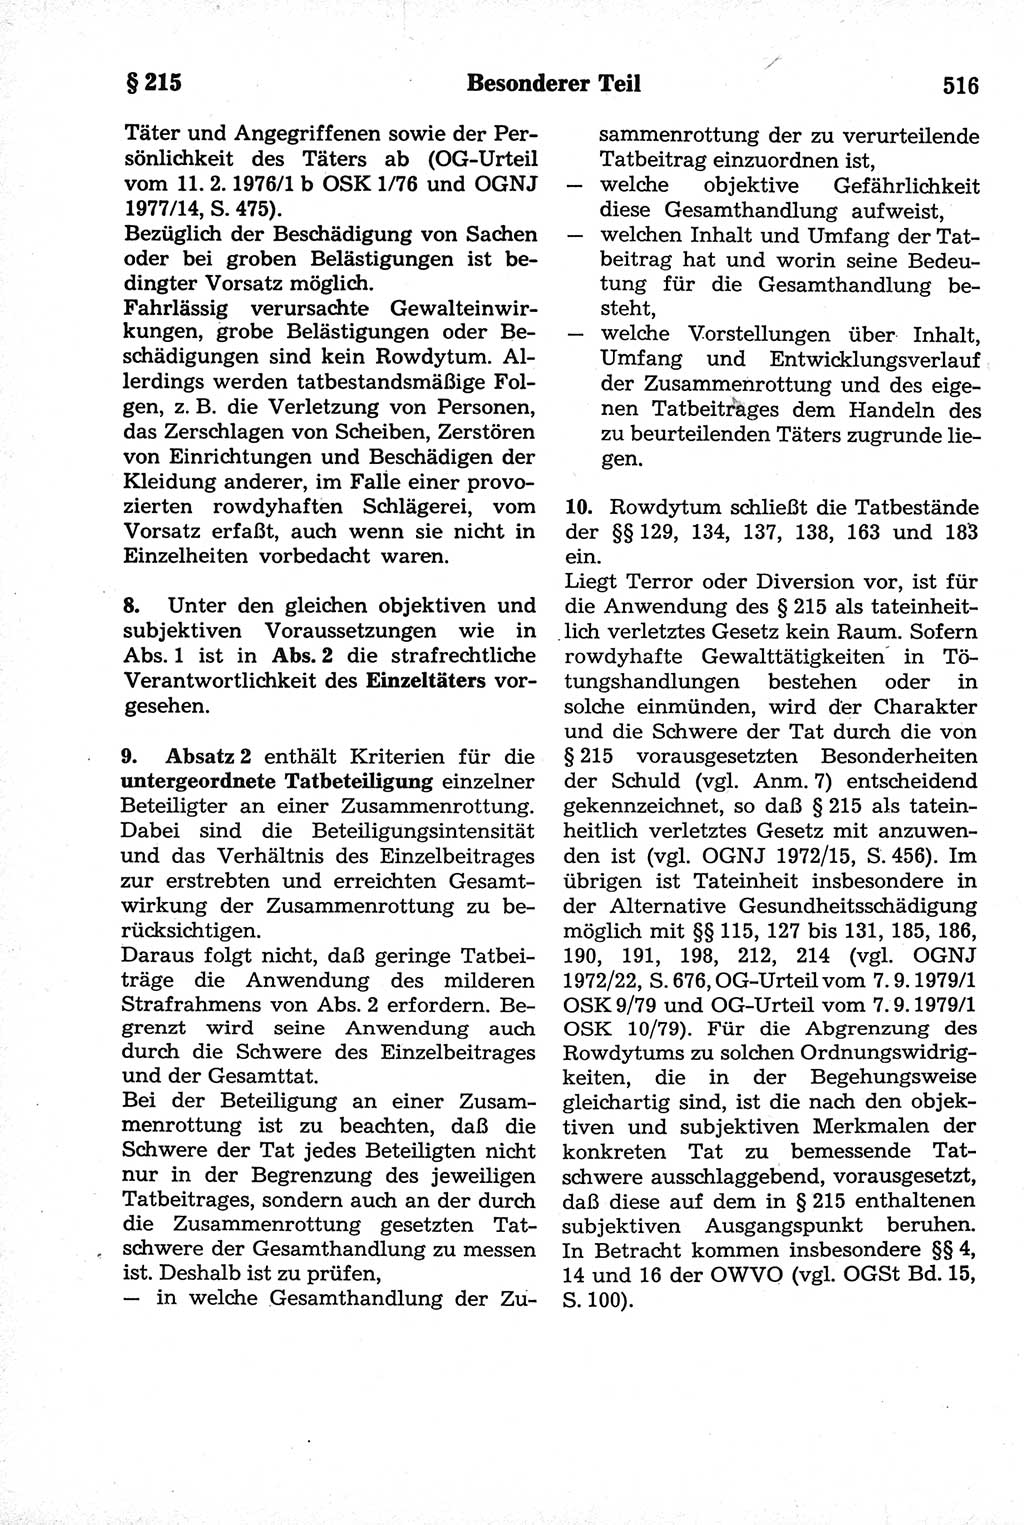 Strafrecht der Deutschen Demokratischen Republik (DDR), Kommentar zum Strafgesetzbuch (StGB) 1981, Seite 516 (Strafr. DDR Komm. StGB 1981, S. 516)